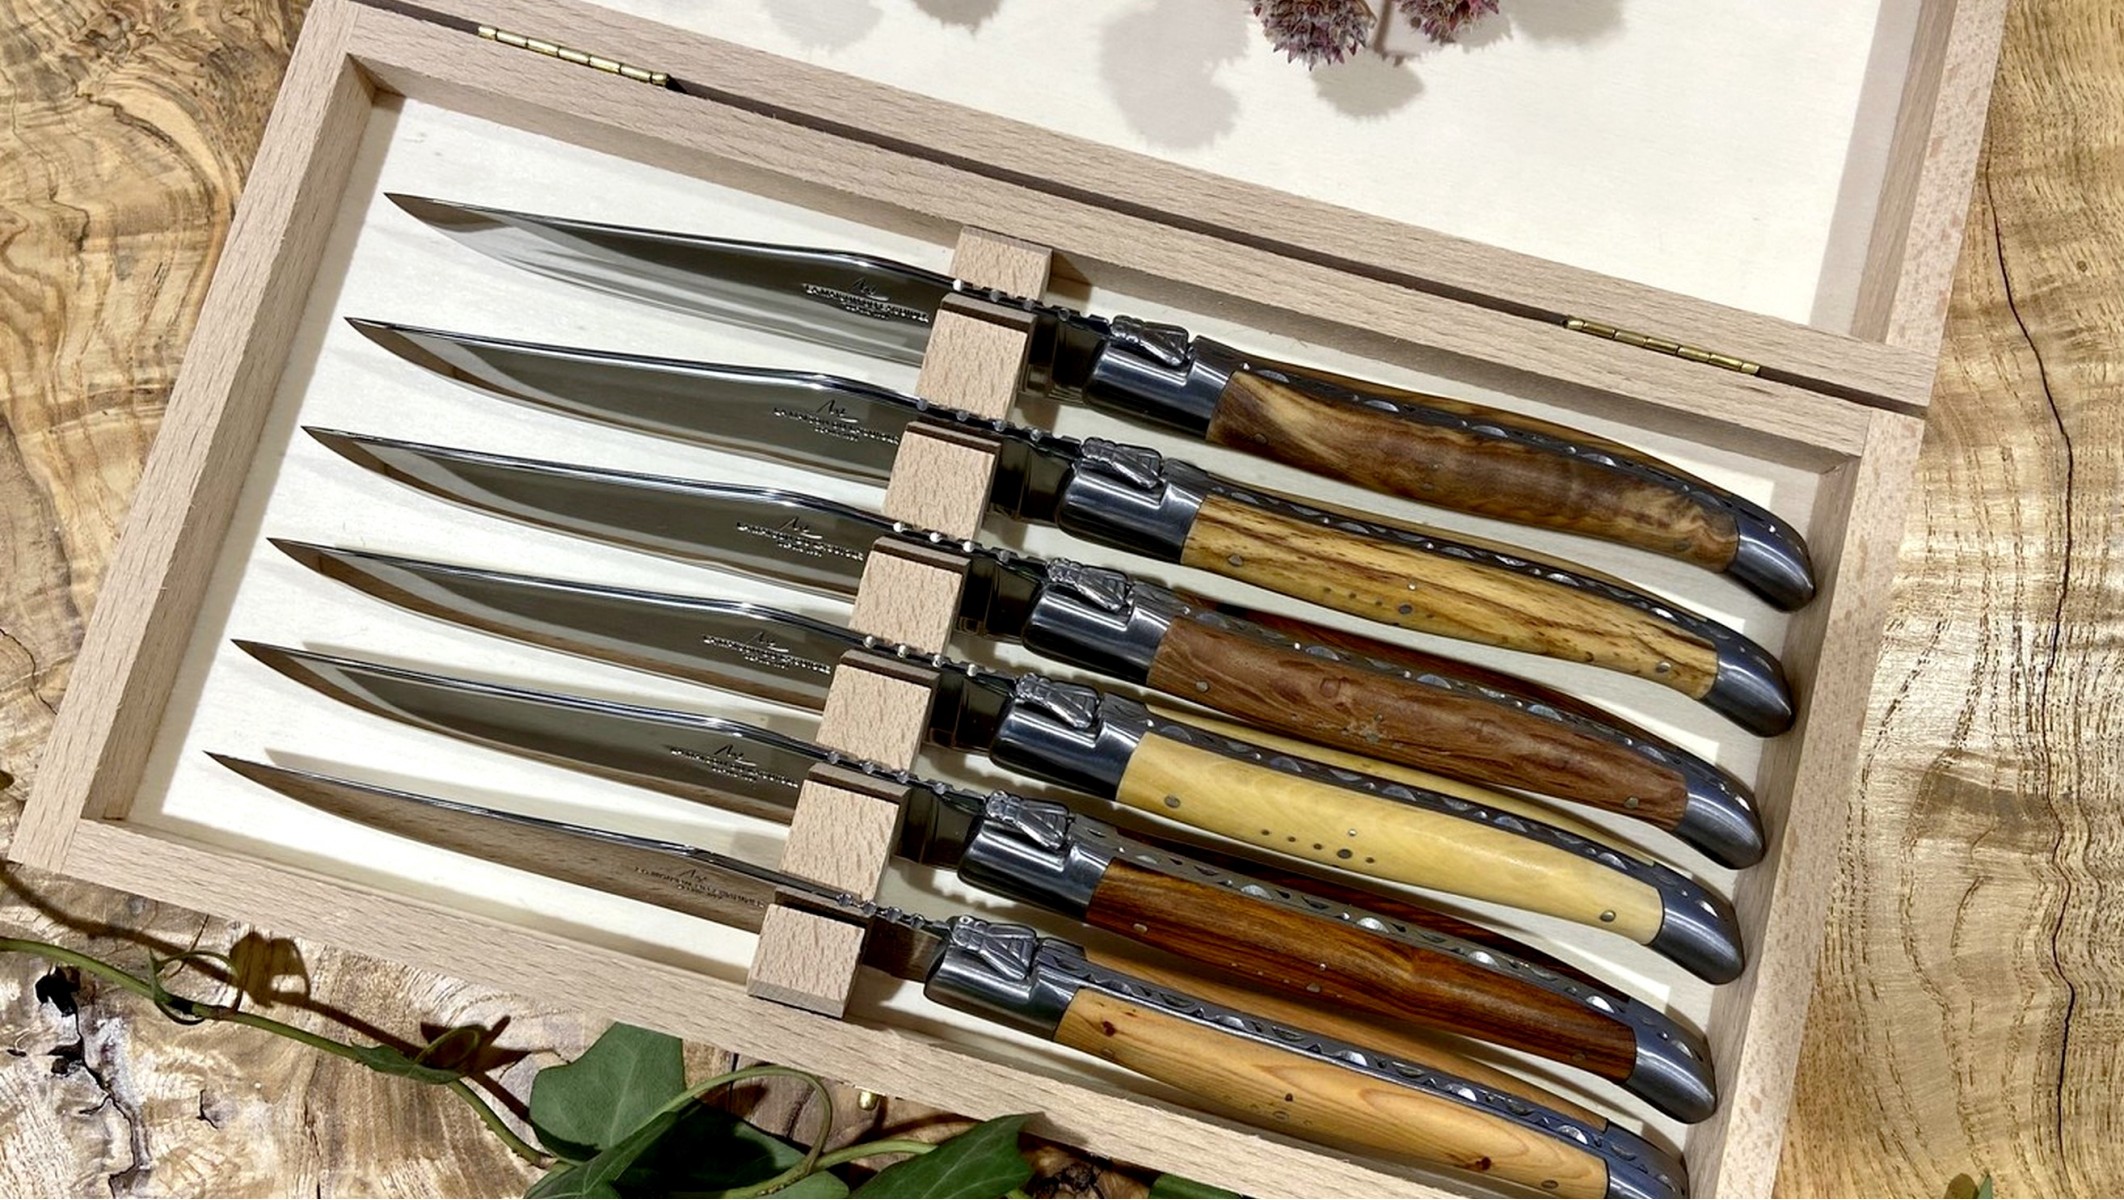 Coffret de 6 Couteaux de table Bois précieux assortis, mitre inox mat -  Laguiole